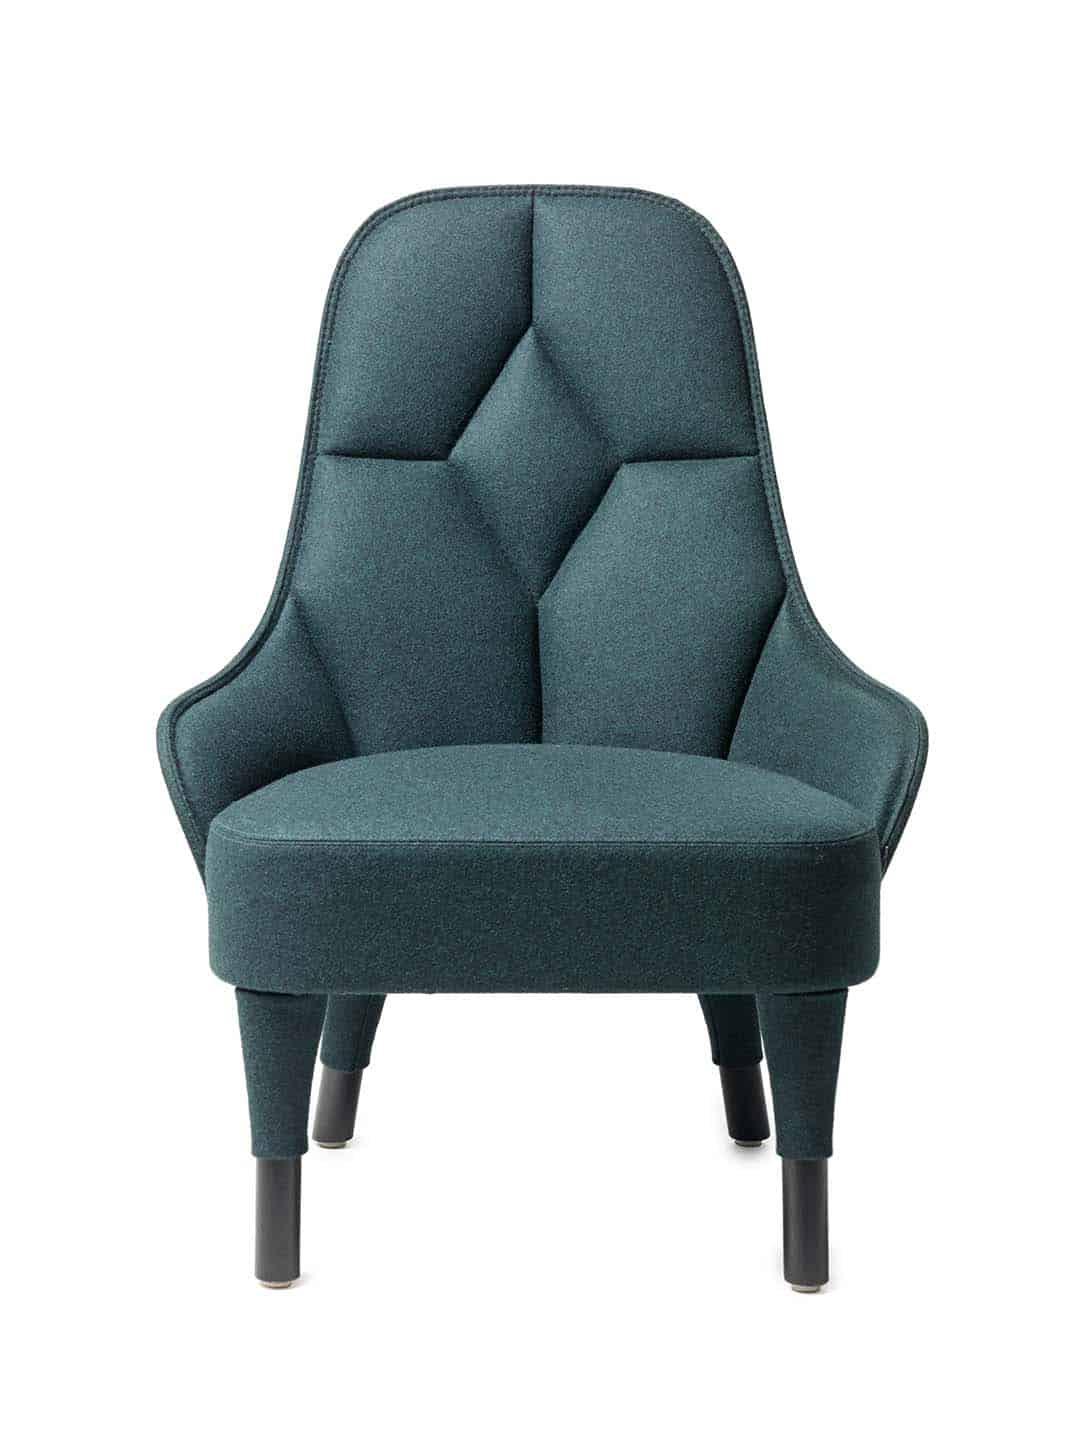 Стильное кресло Garsnas Emma зеленого цвета